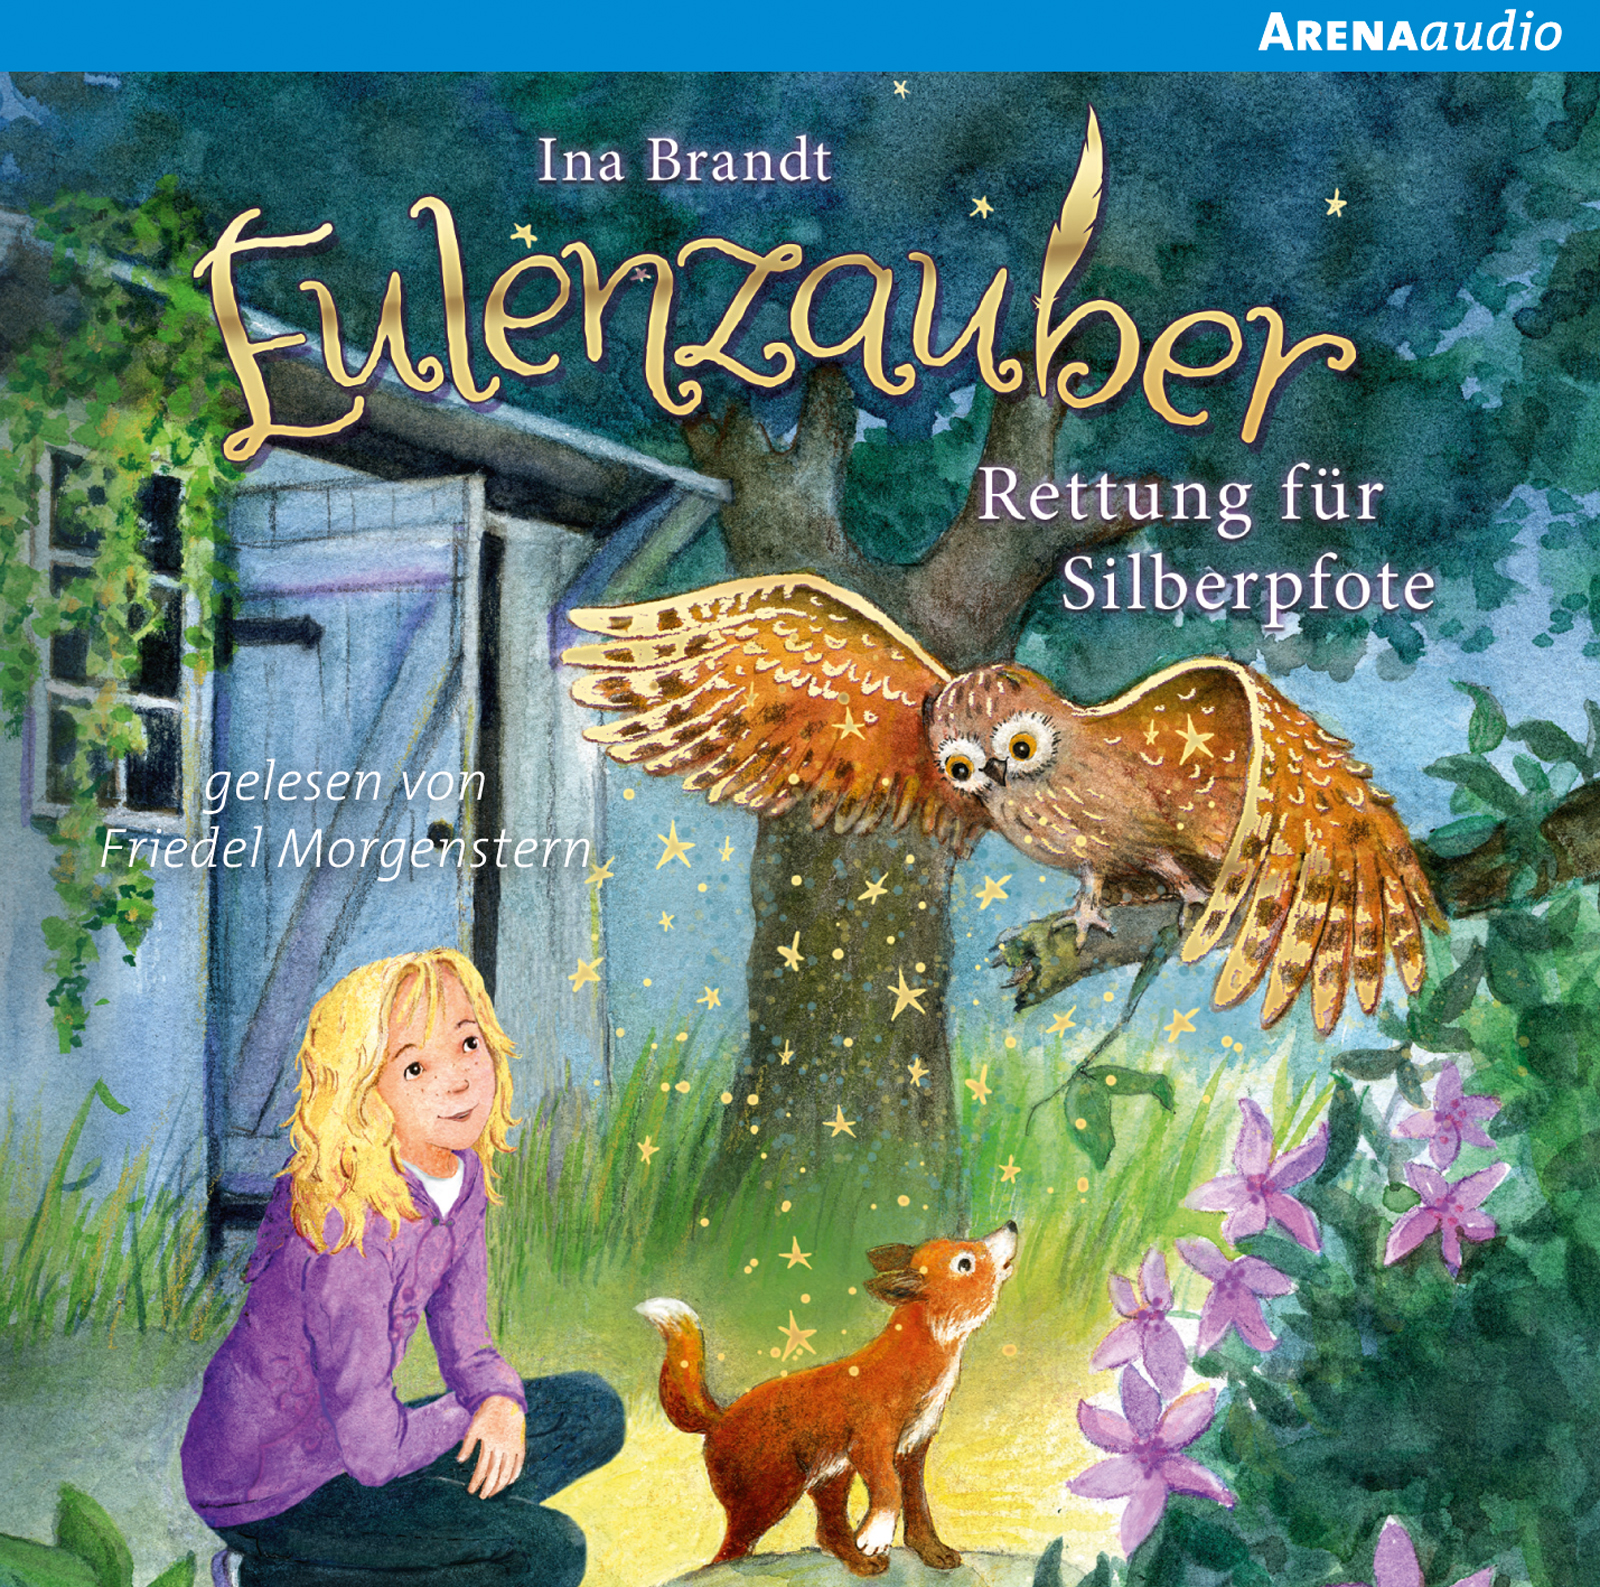 Eulenzauber (2). Rettung für Silberpfote | ARENA Verlag